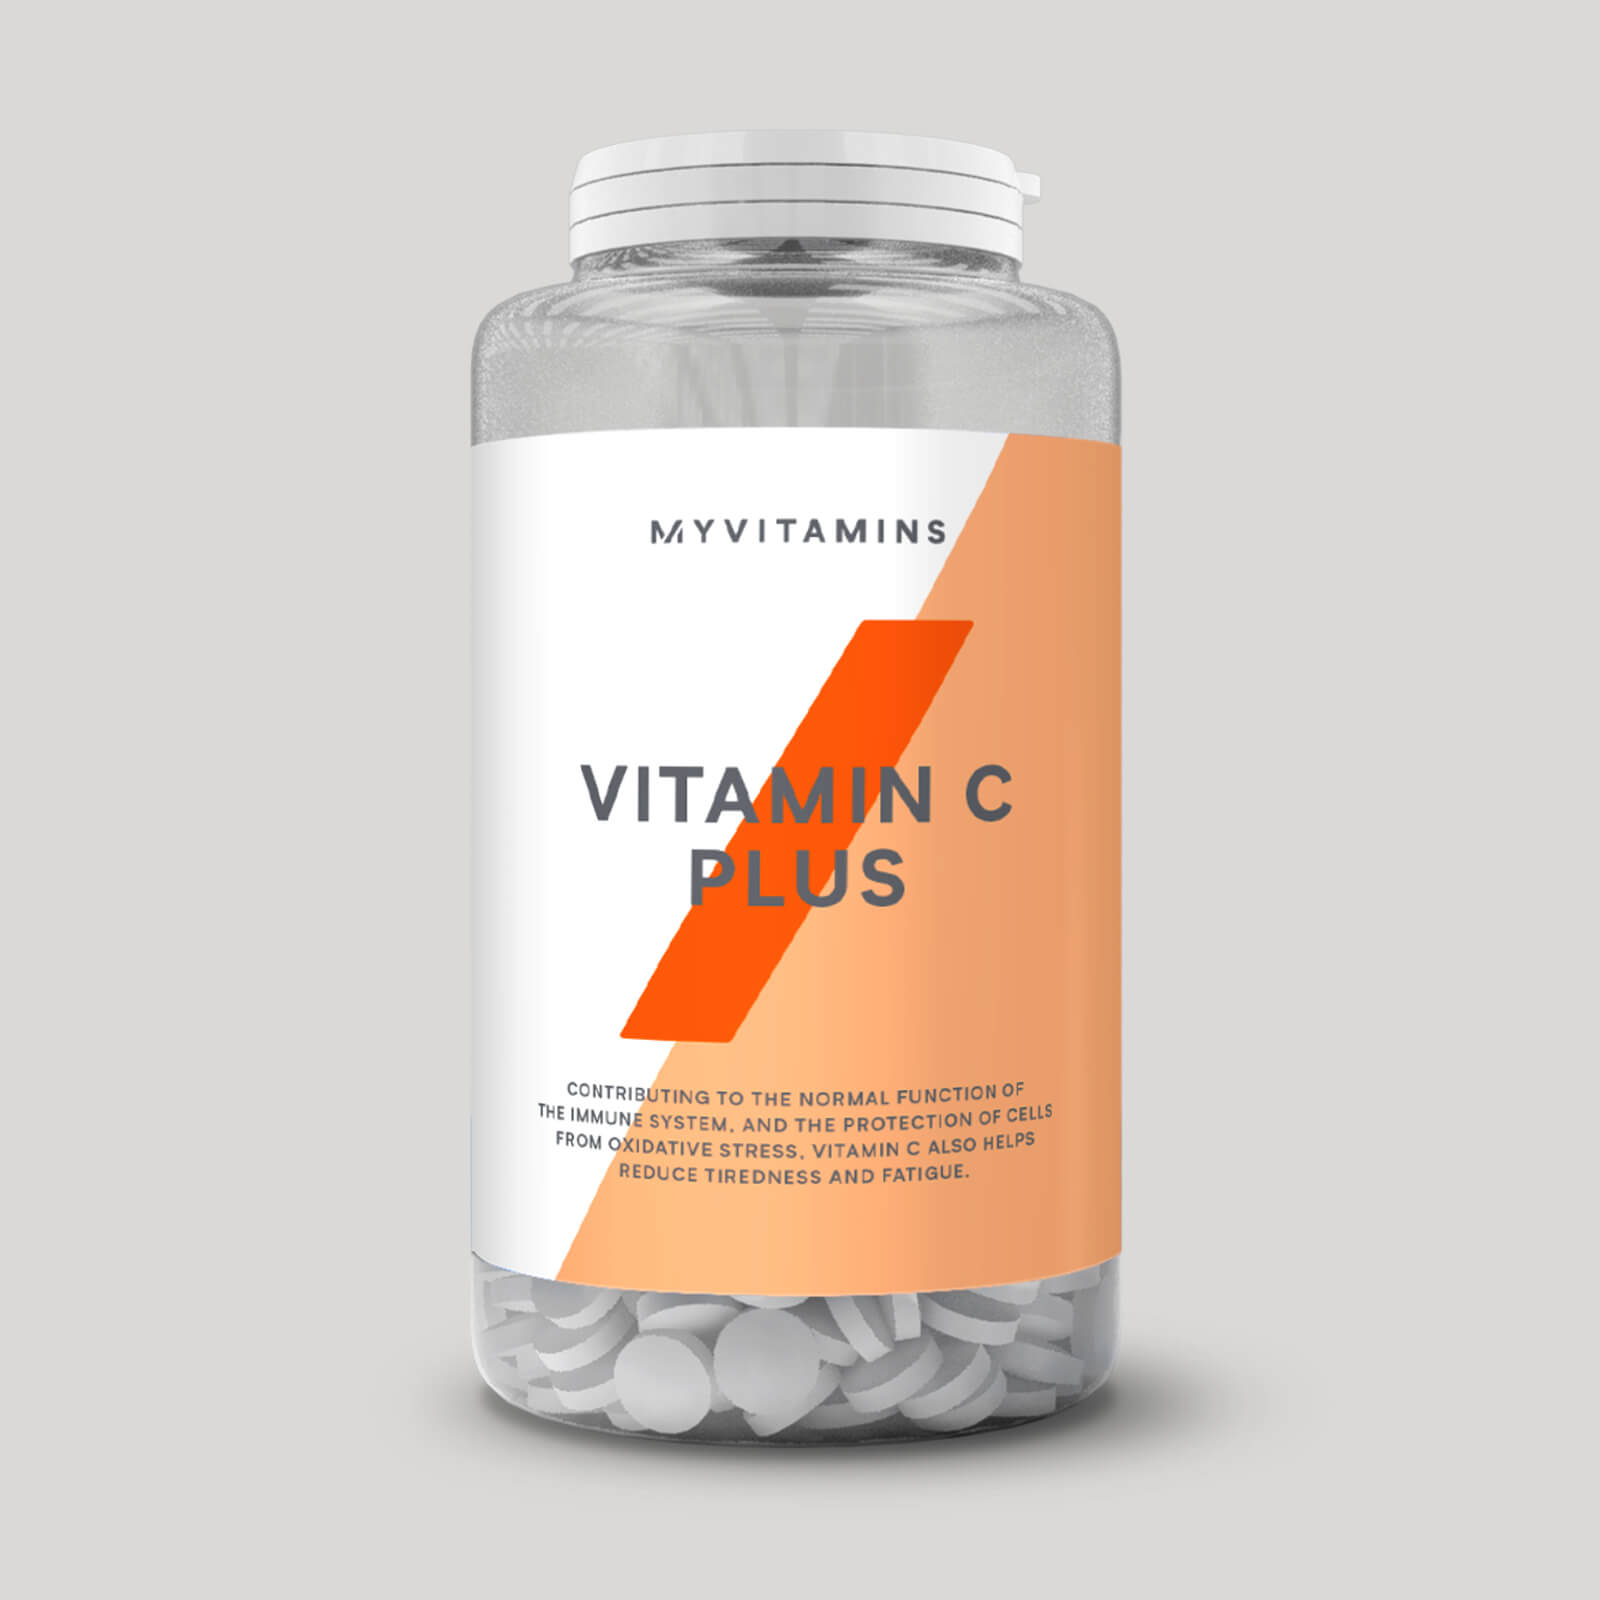 Myvitamins Vitamin C Plus Tablets - 60Tablets - Tub